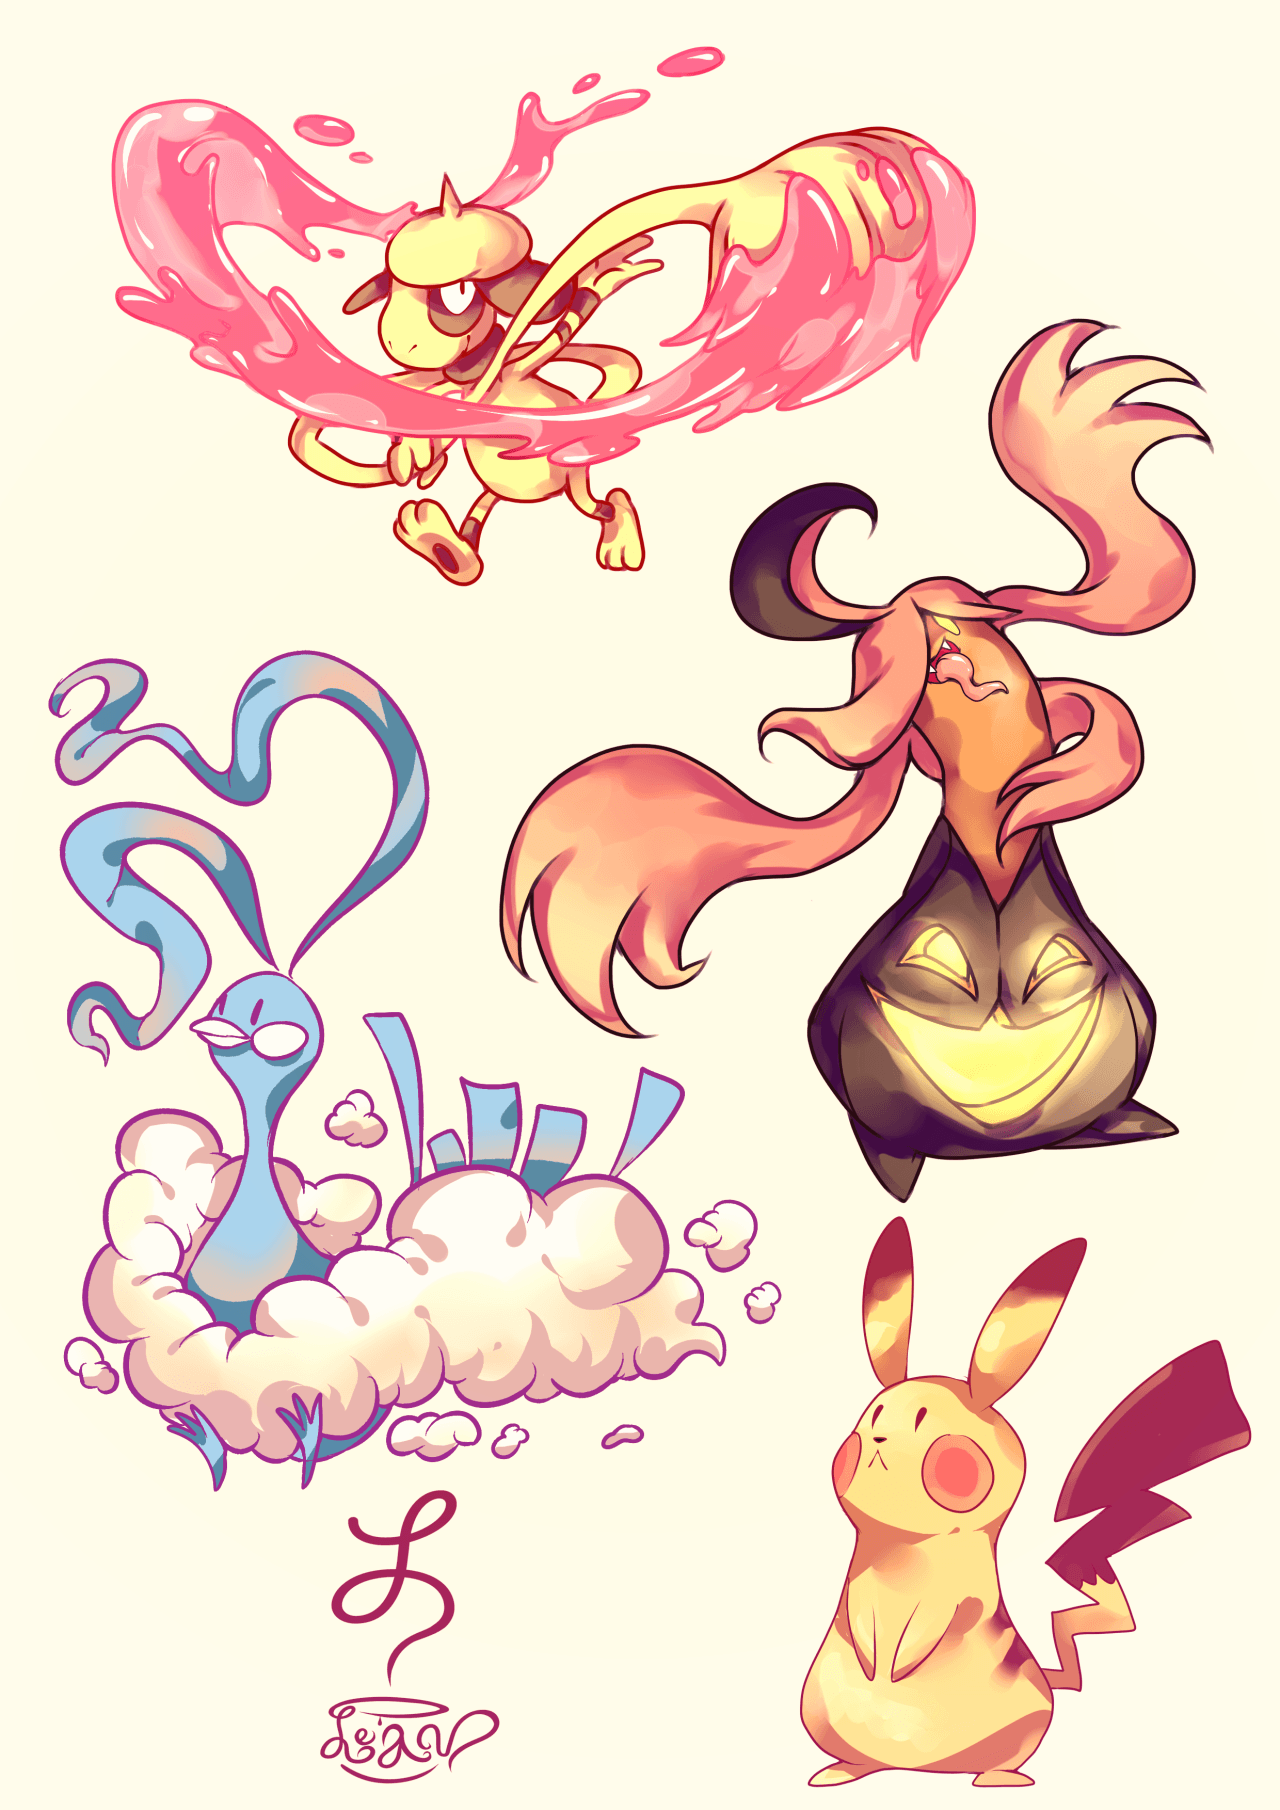 Smeargle, Altaria, Gourgeist, and Pikachu. Pokémon